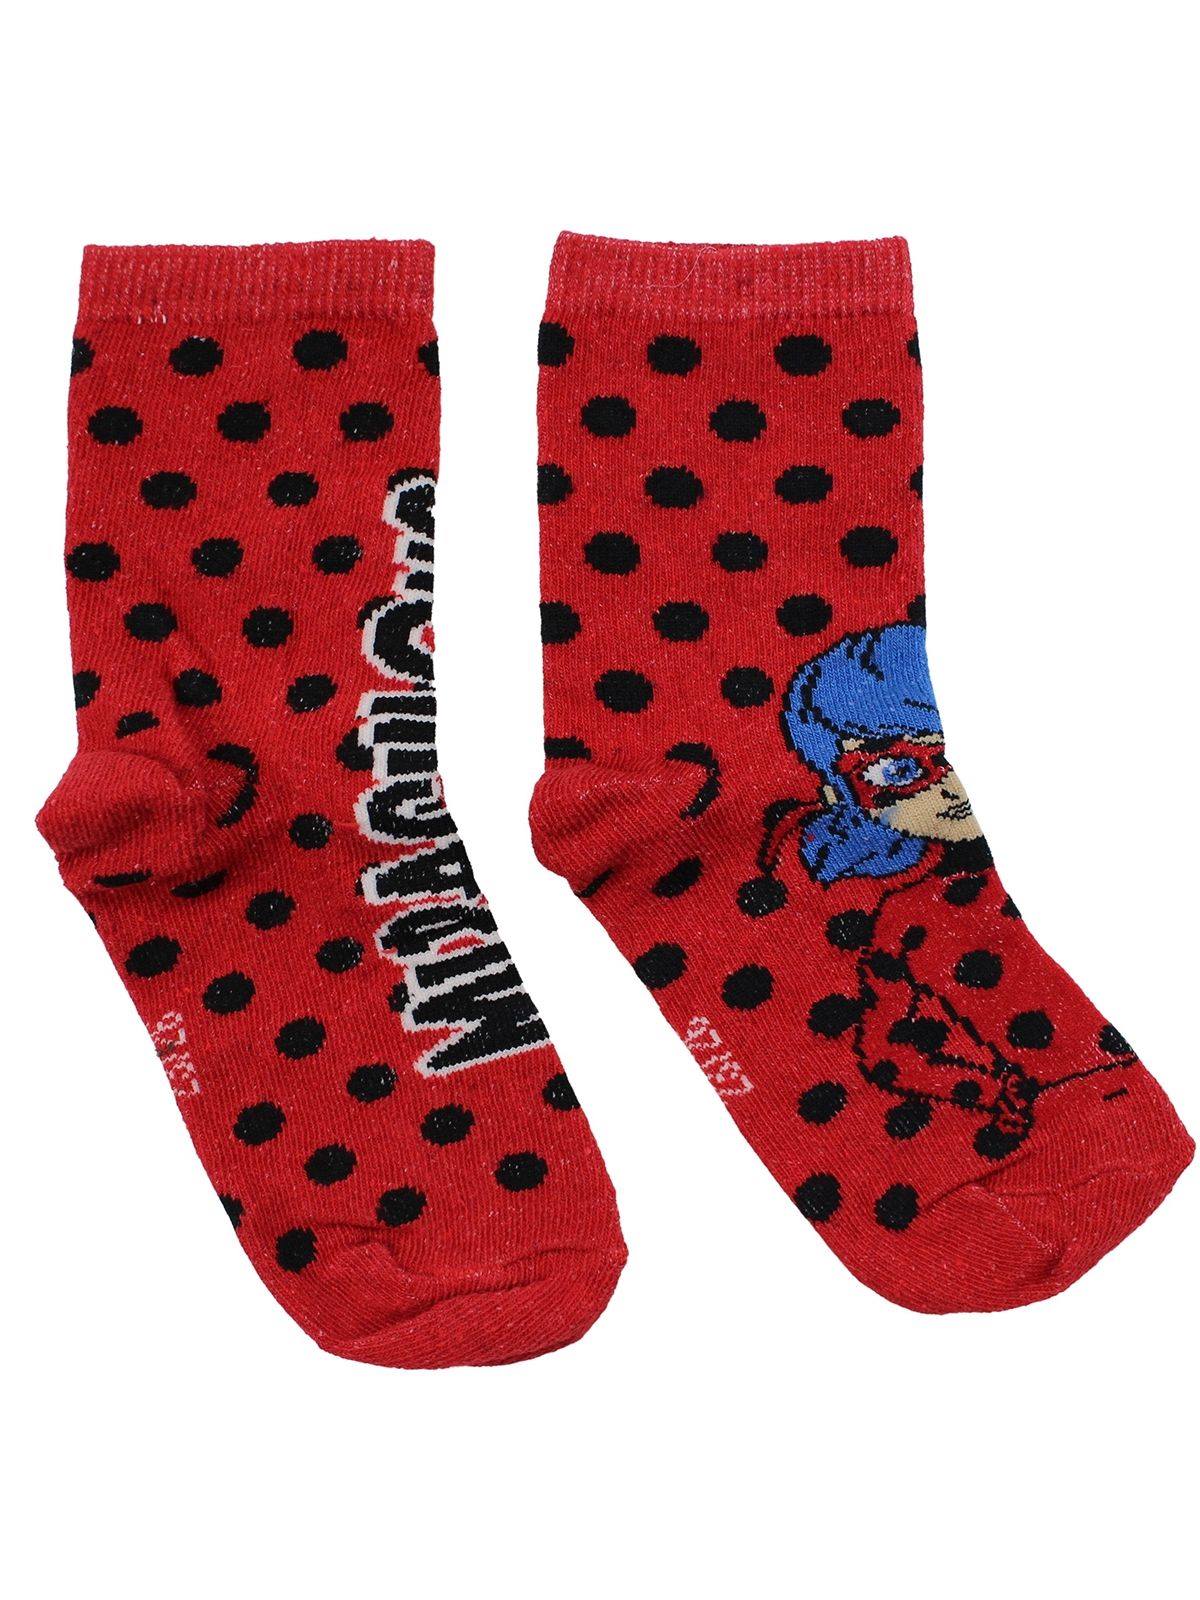 LadyBug Par de calcetines